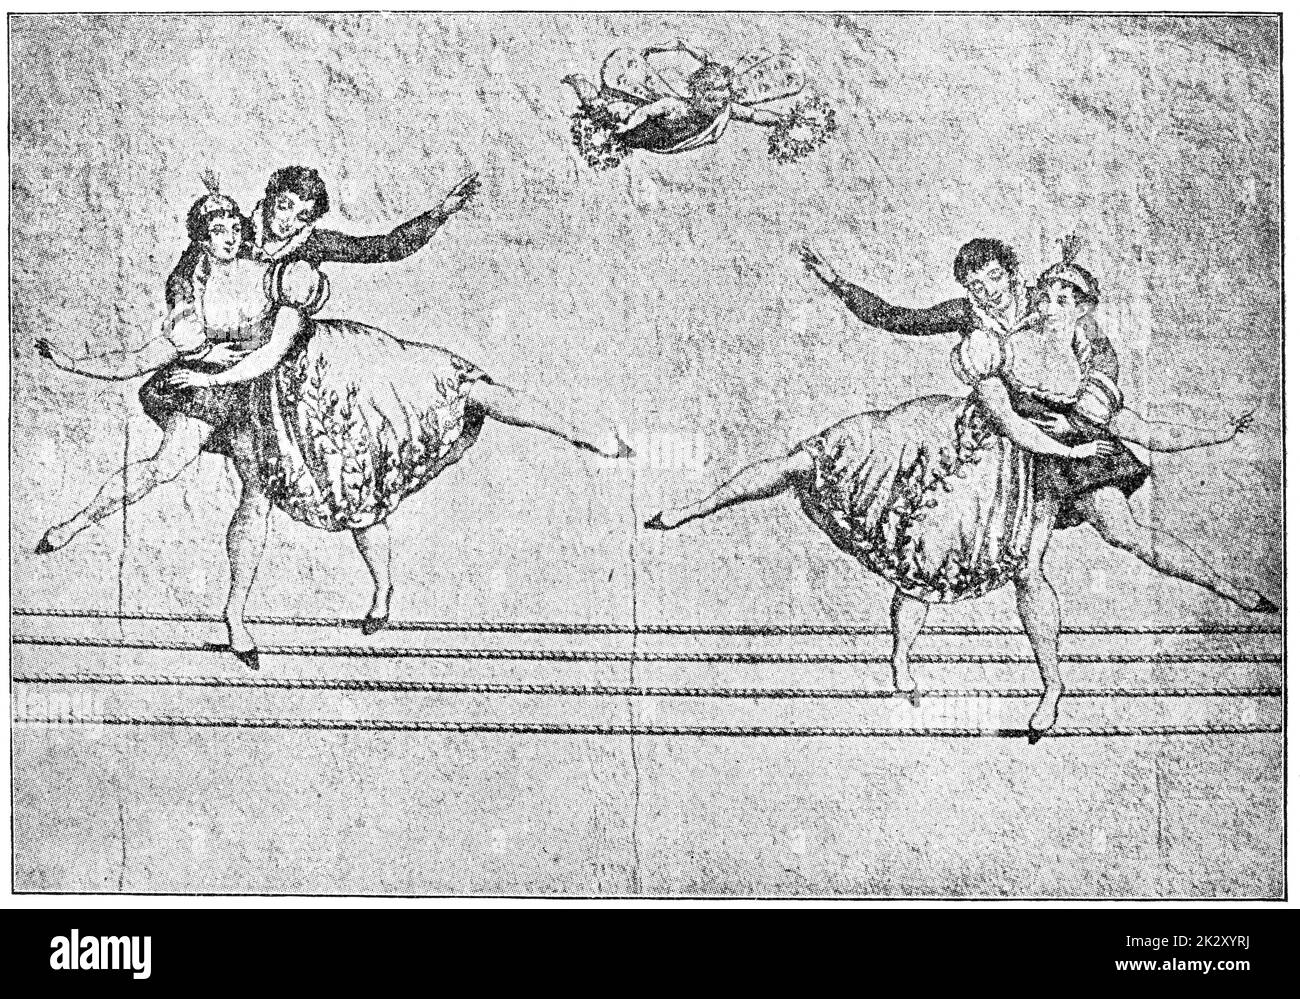 Performance par une famille de marcheurs sur corde raide. Illustration du 19e siècle. Arrière-plan blanc. Banque D'Images